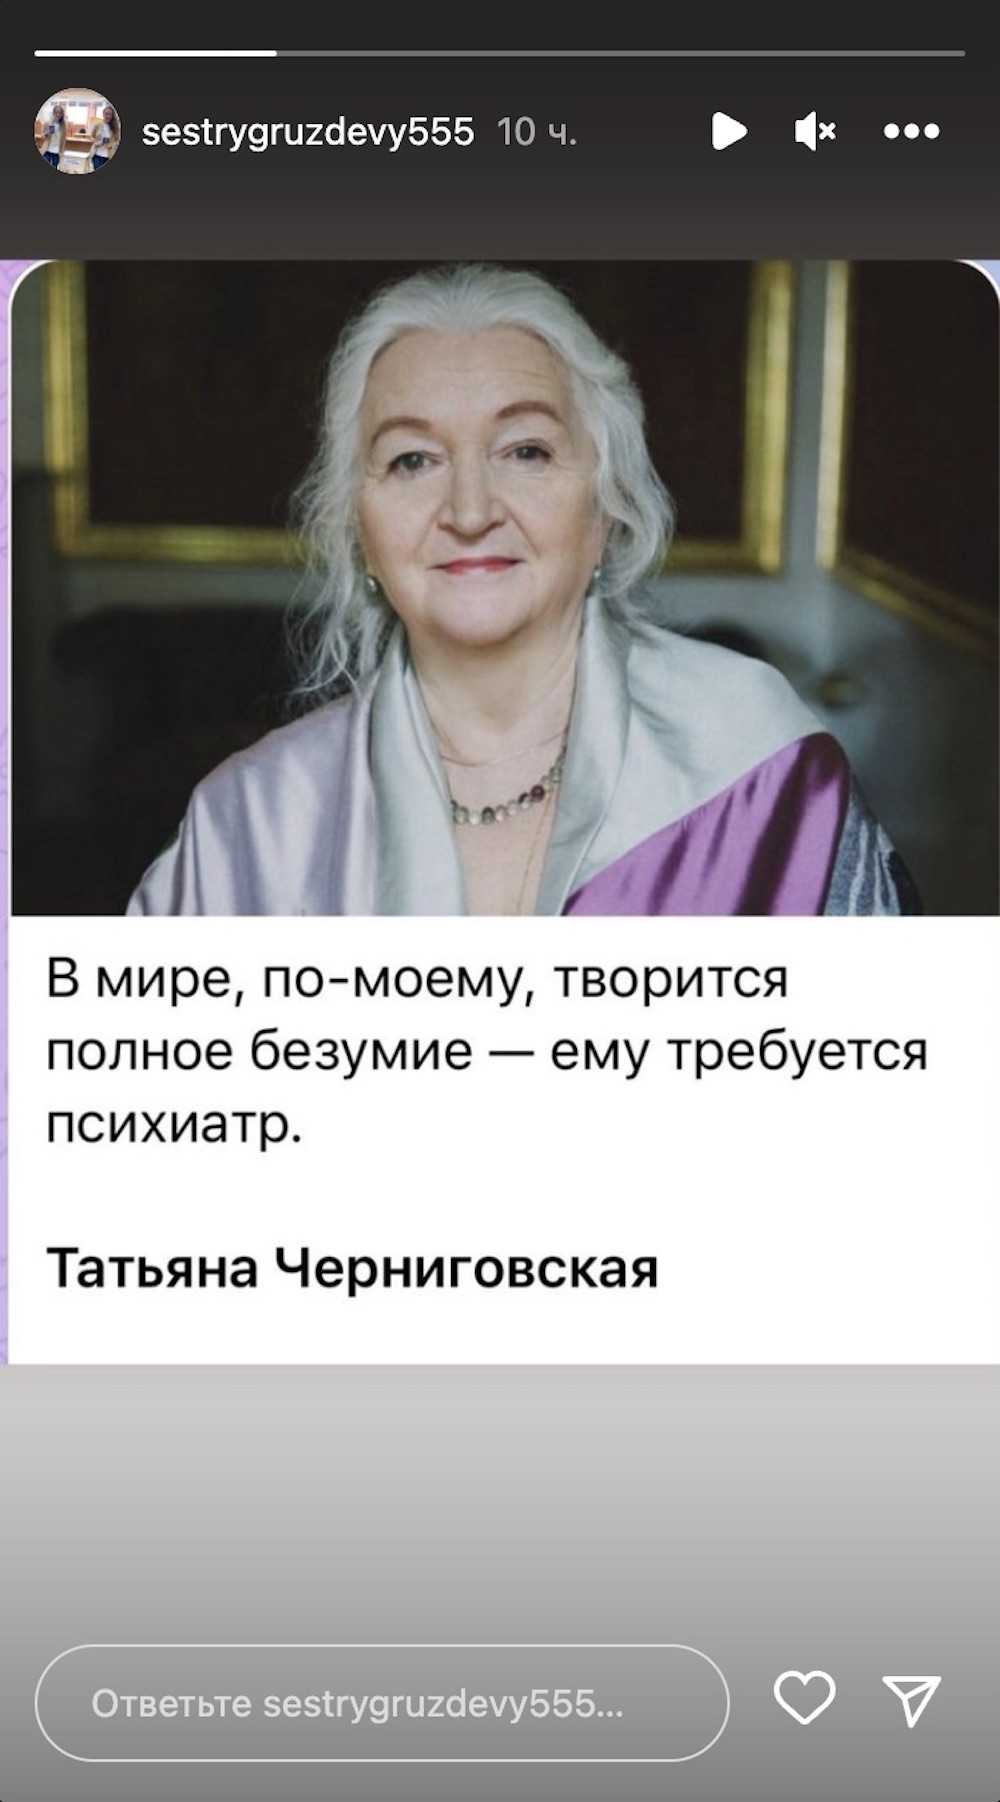 Сториз в аккаунте Инстаграм сестер Груздевых.